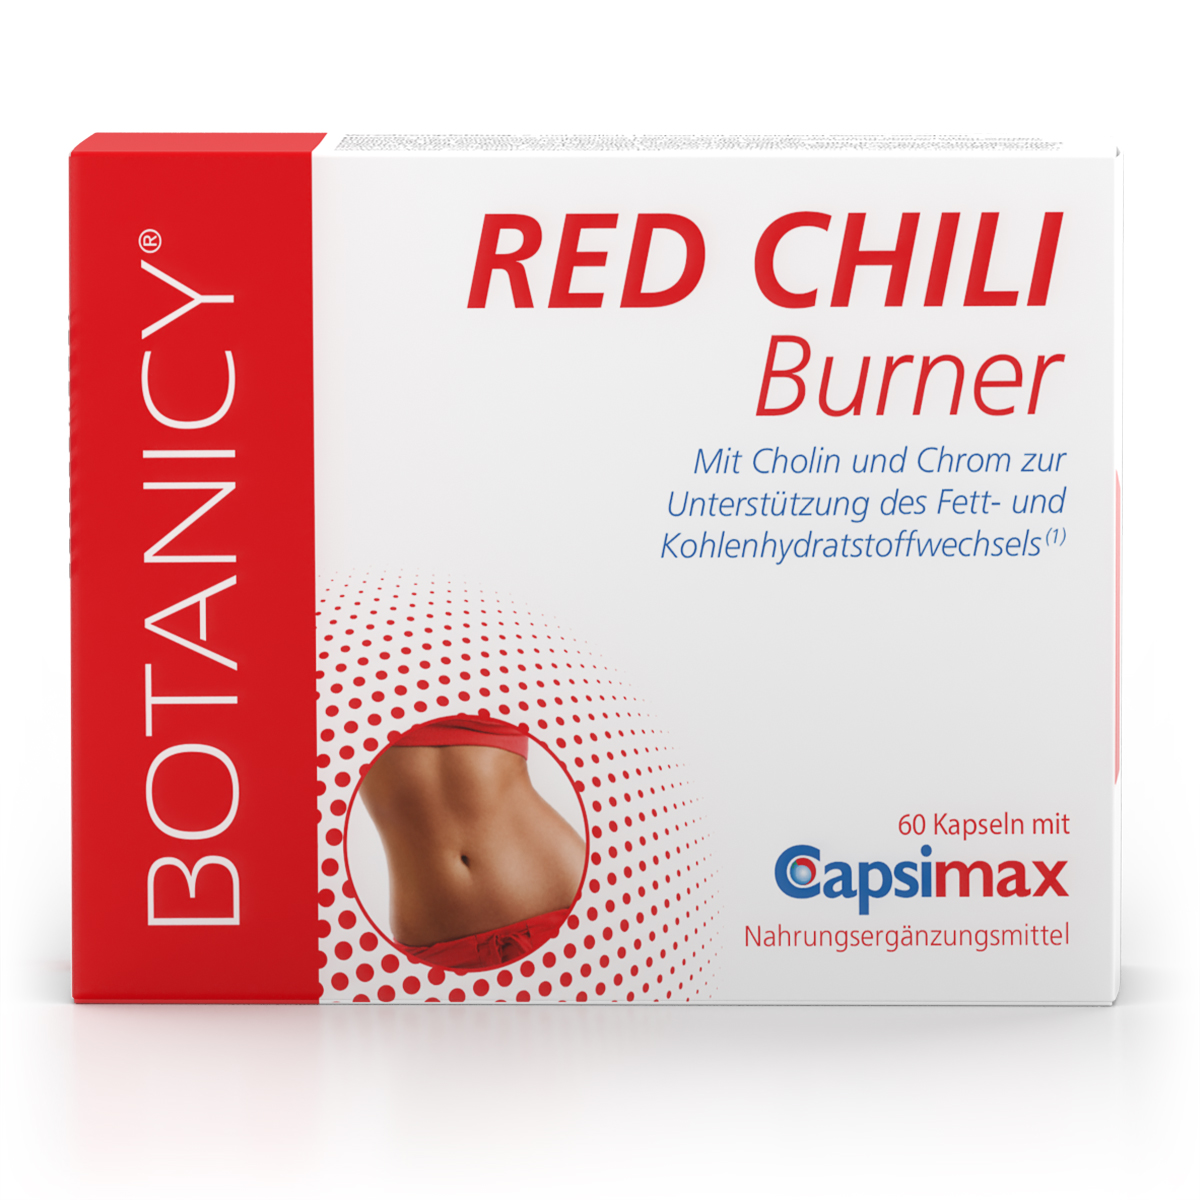 RED CHILI BURNER von der Marke Botanicy. Das Bild zeigt eine rot-weiße Produktpackung. Mit diesen Kapseln, die wertvolles Capsaicin aus rotem Chili enthalten, kannst du deinen Stoffwechsel anregen und die Fettverbrennung fördern. Perfekt für dich geeignet